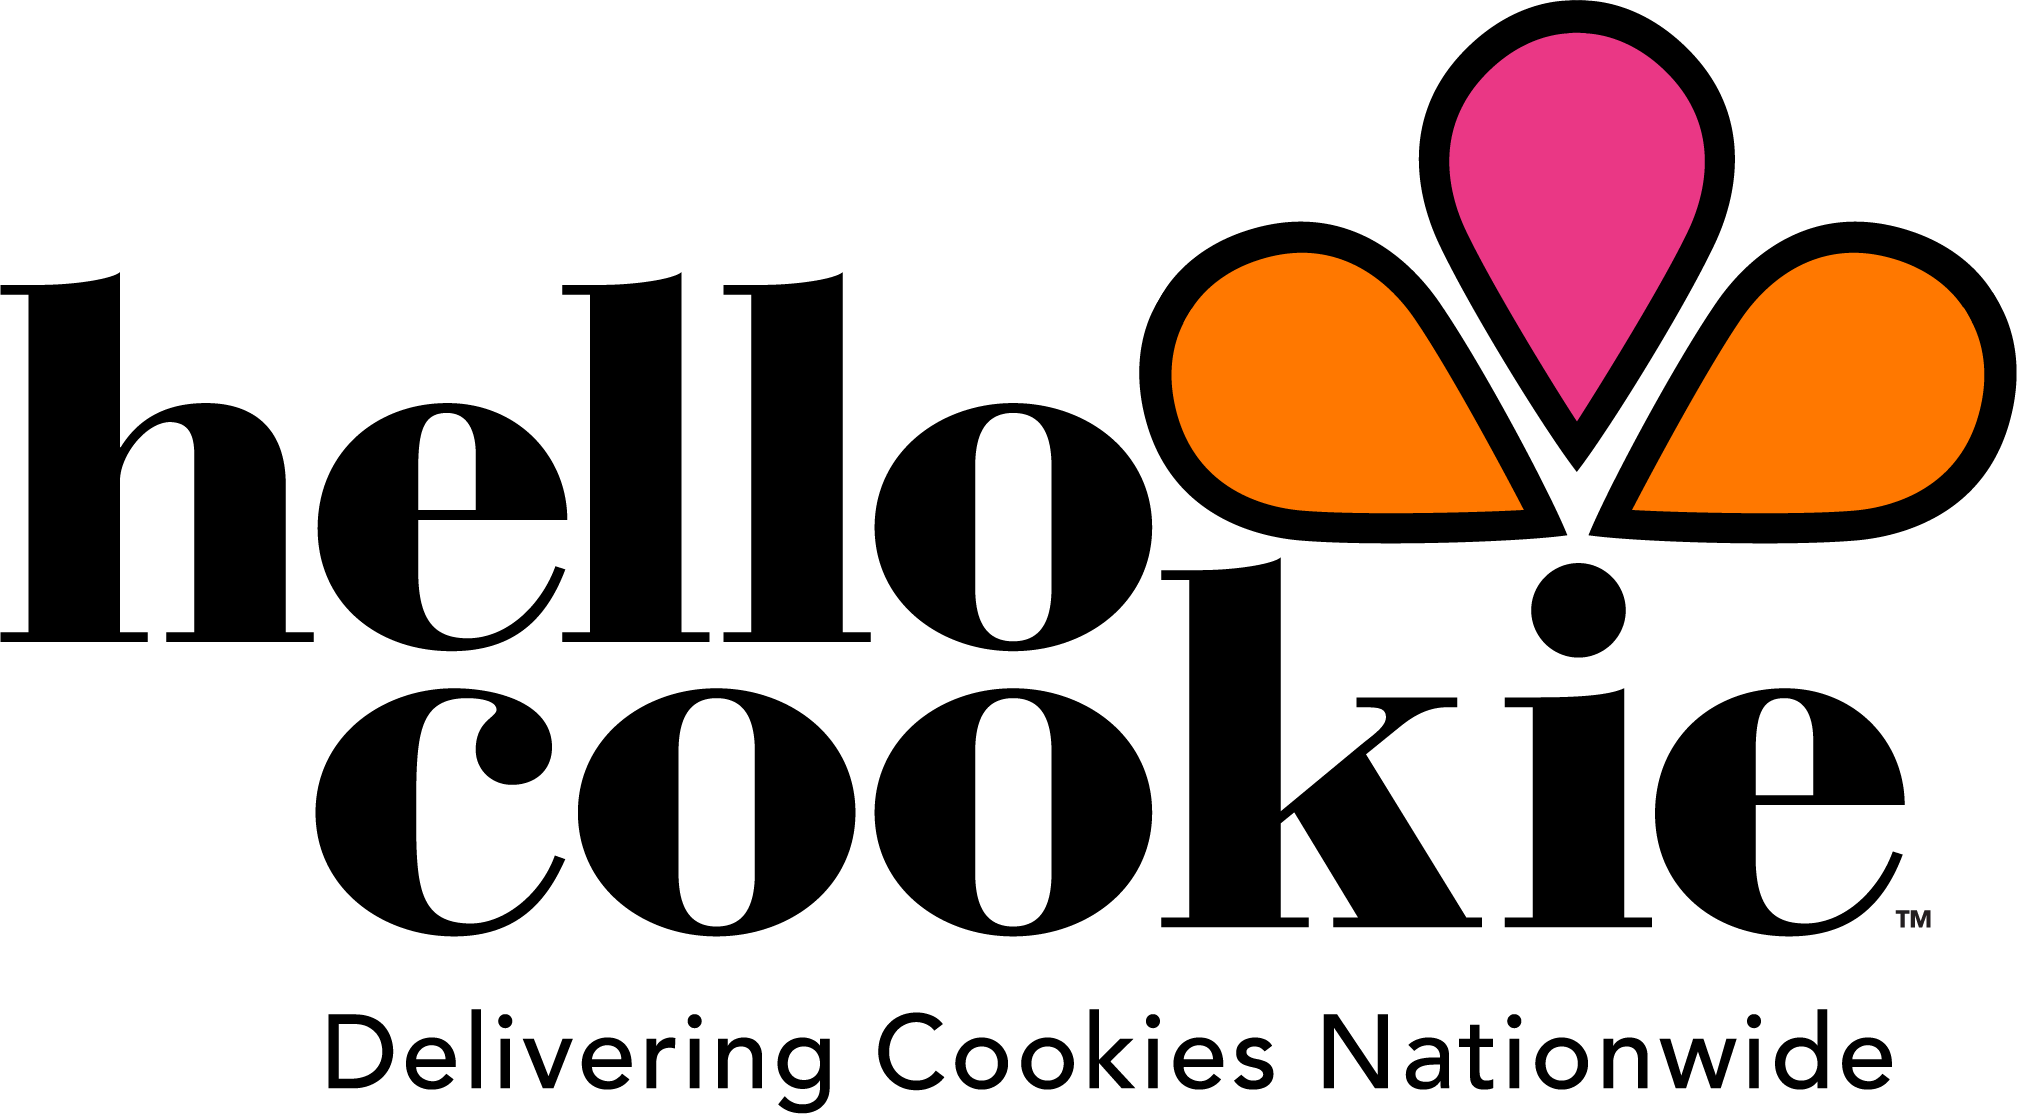 Hello Cookie